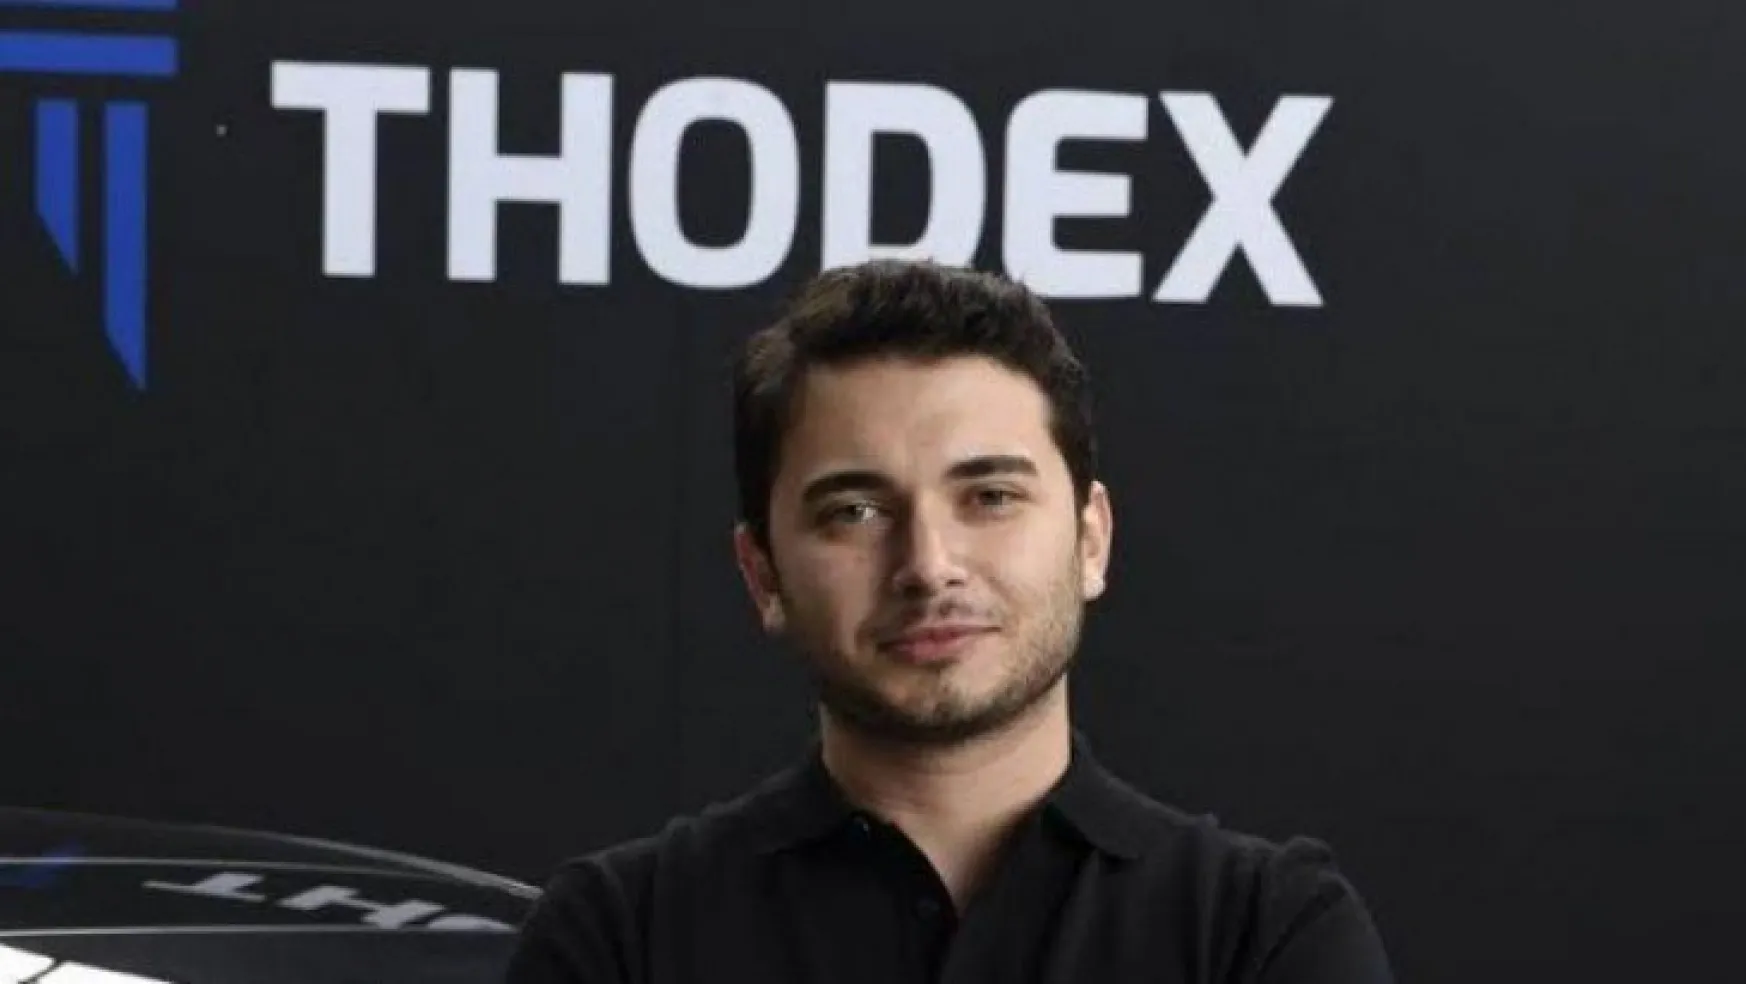 Thodex iş insanlarını da vurdu, Milyonlar kaybettiler